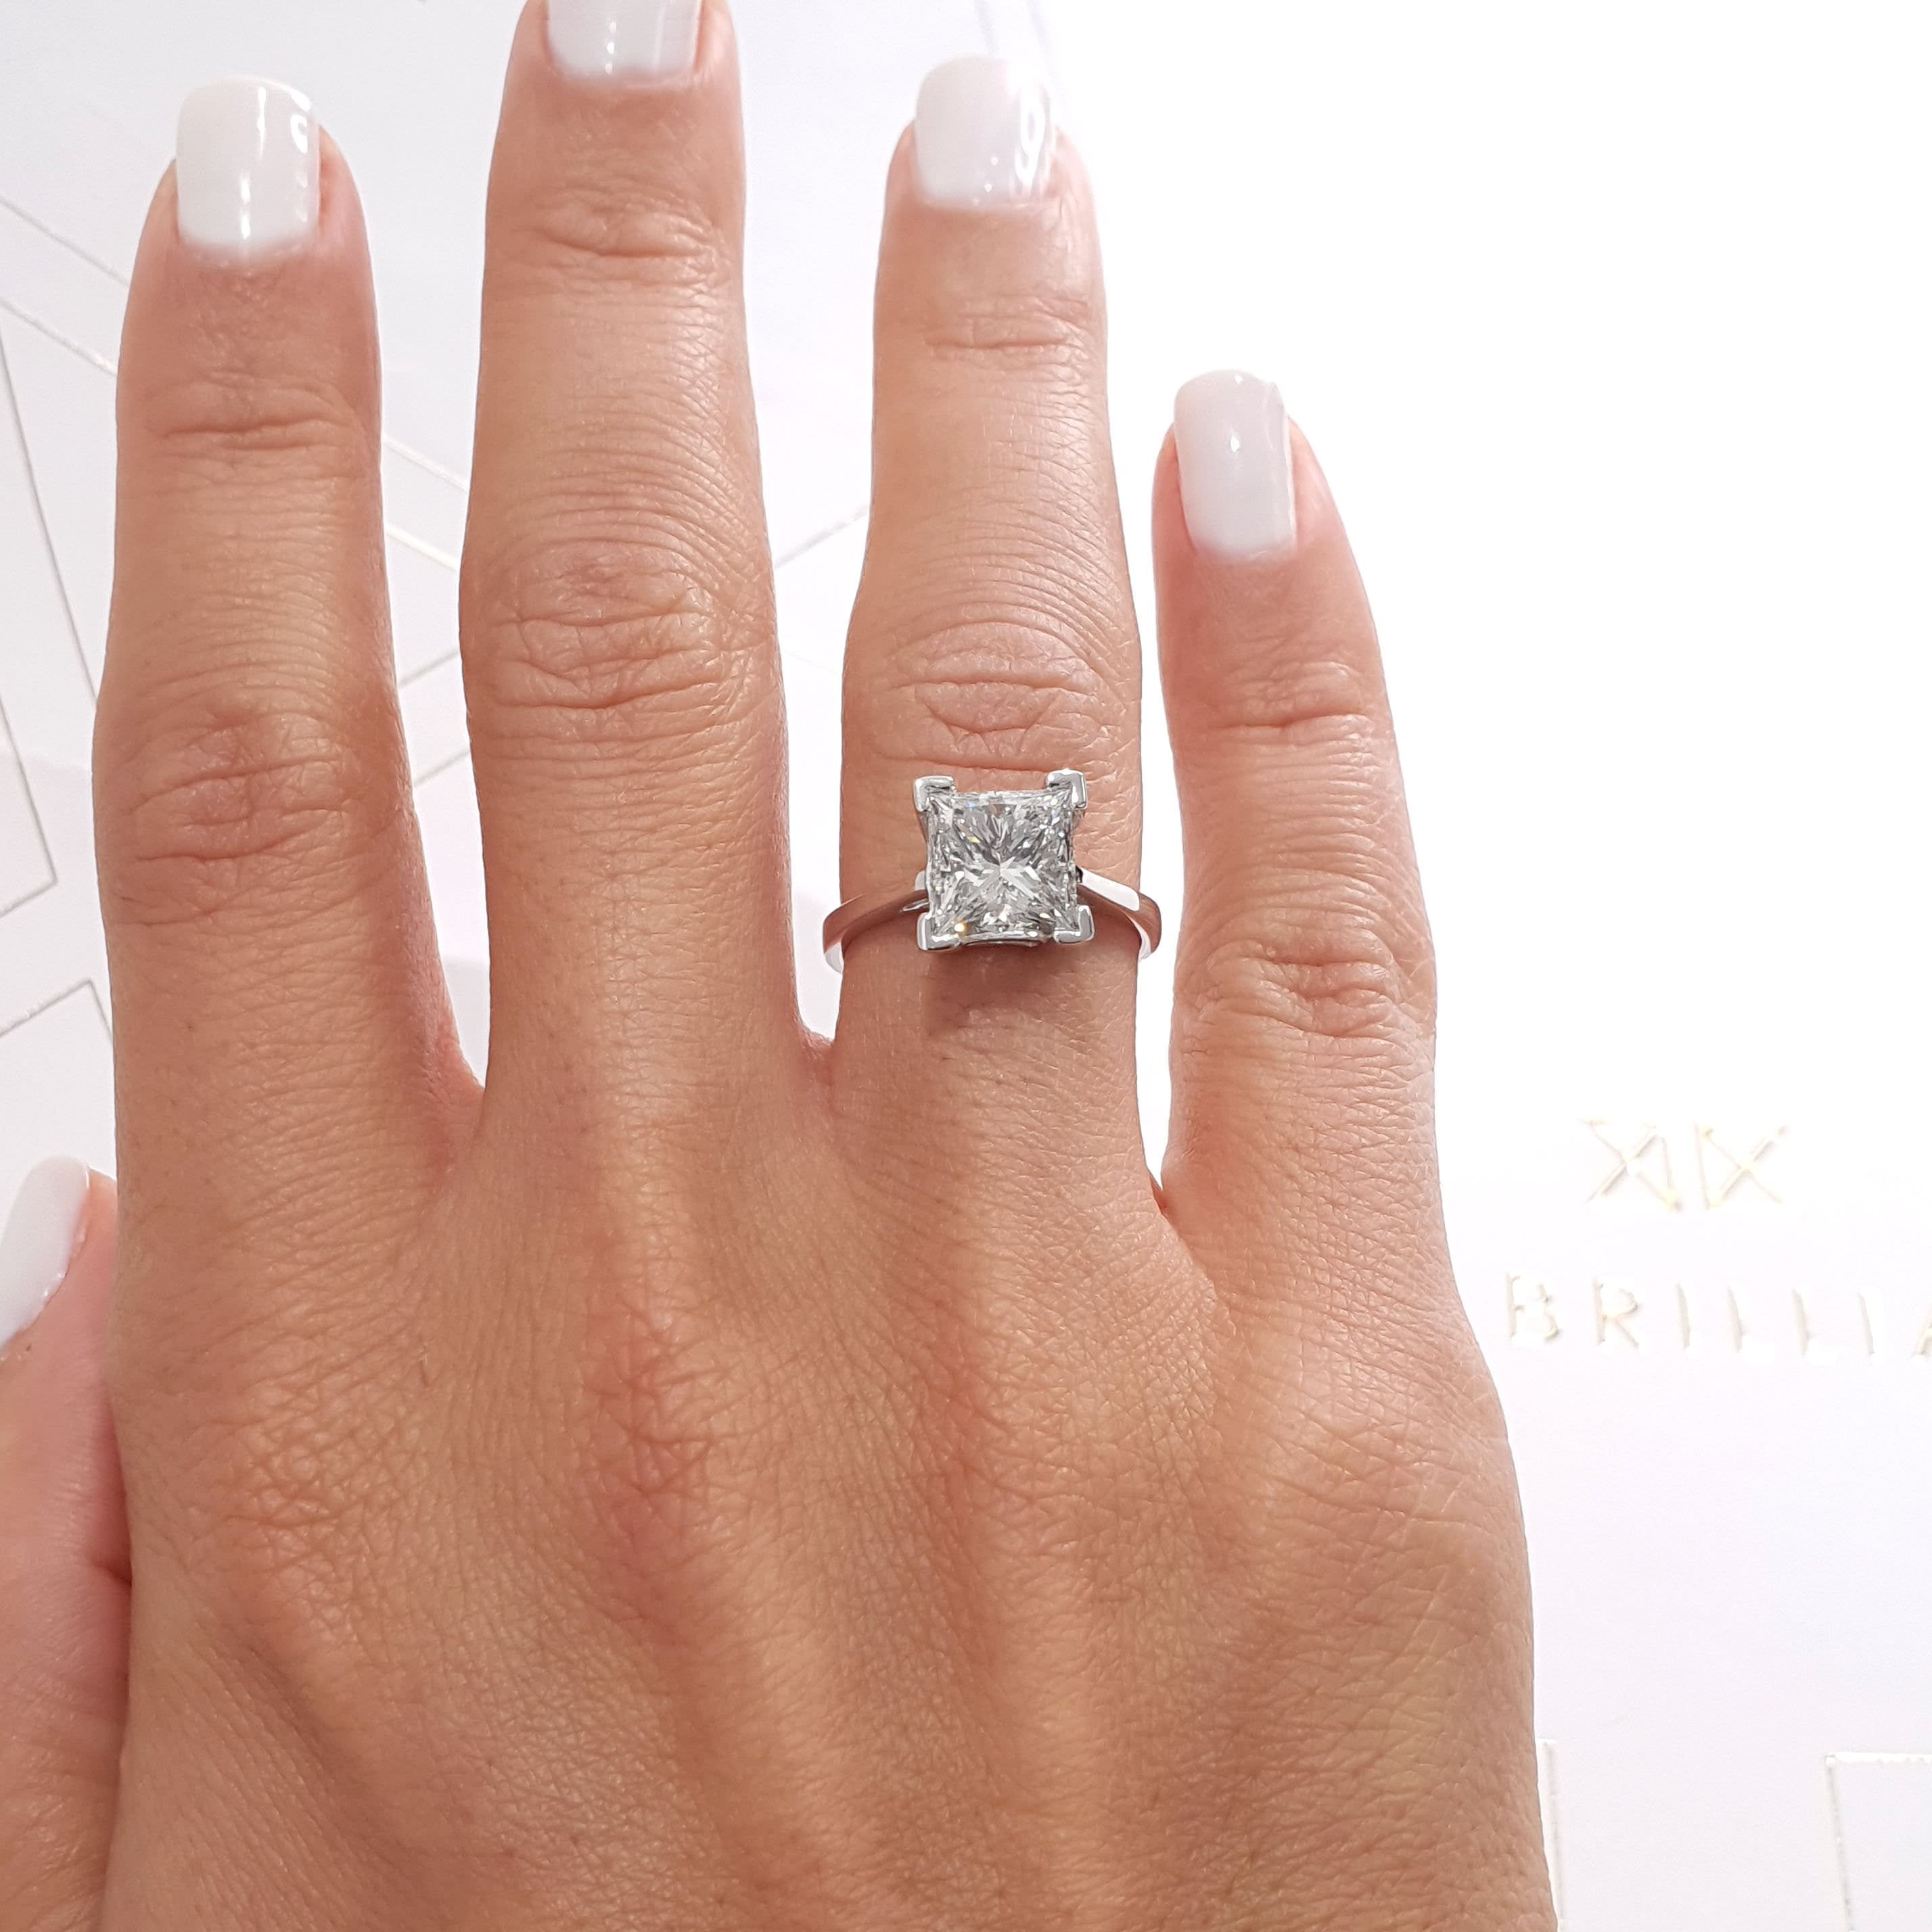 Ella Diamond Engagement Ring   (3 Carat) -14K White Gold